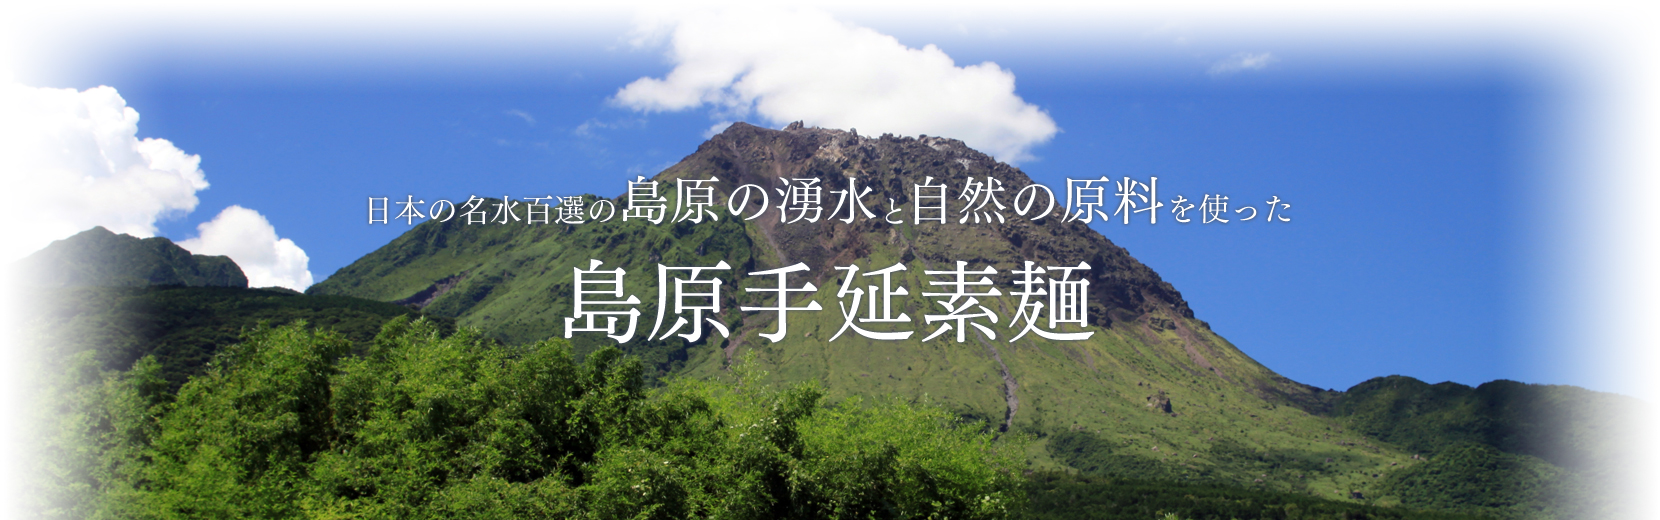 日本の名水百選の島原の湧水と自然の原料を使った島原手延素麺。